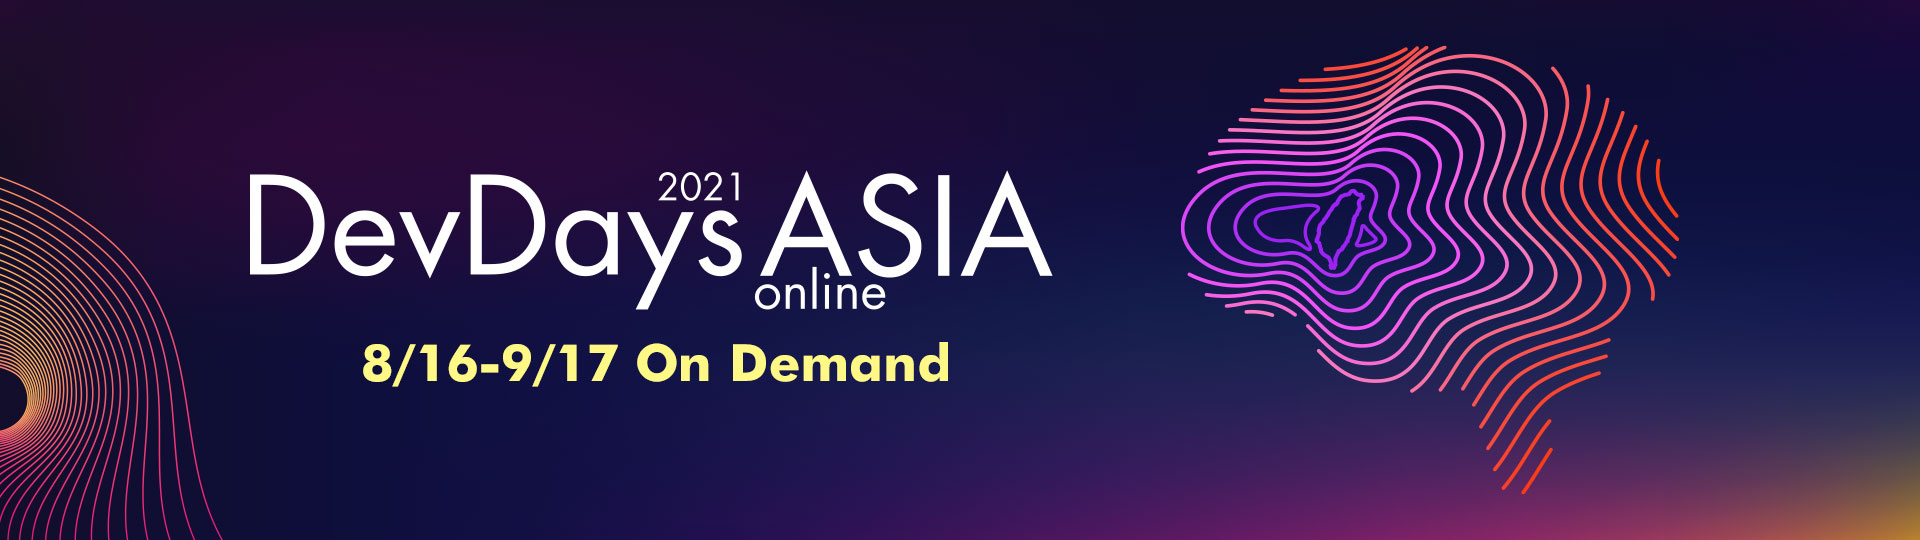 DevDays Asia 2021 Online